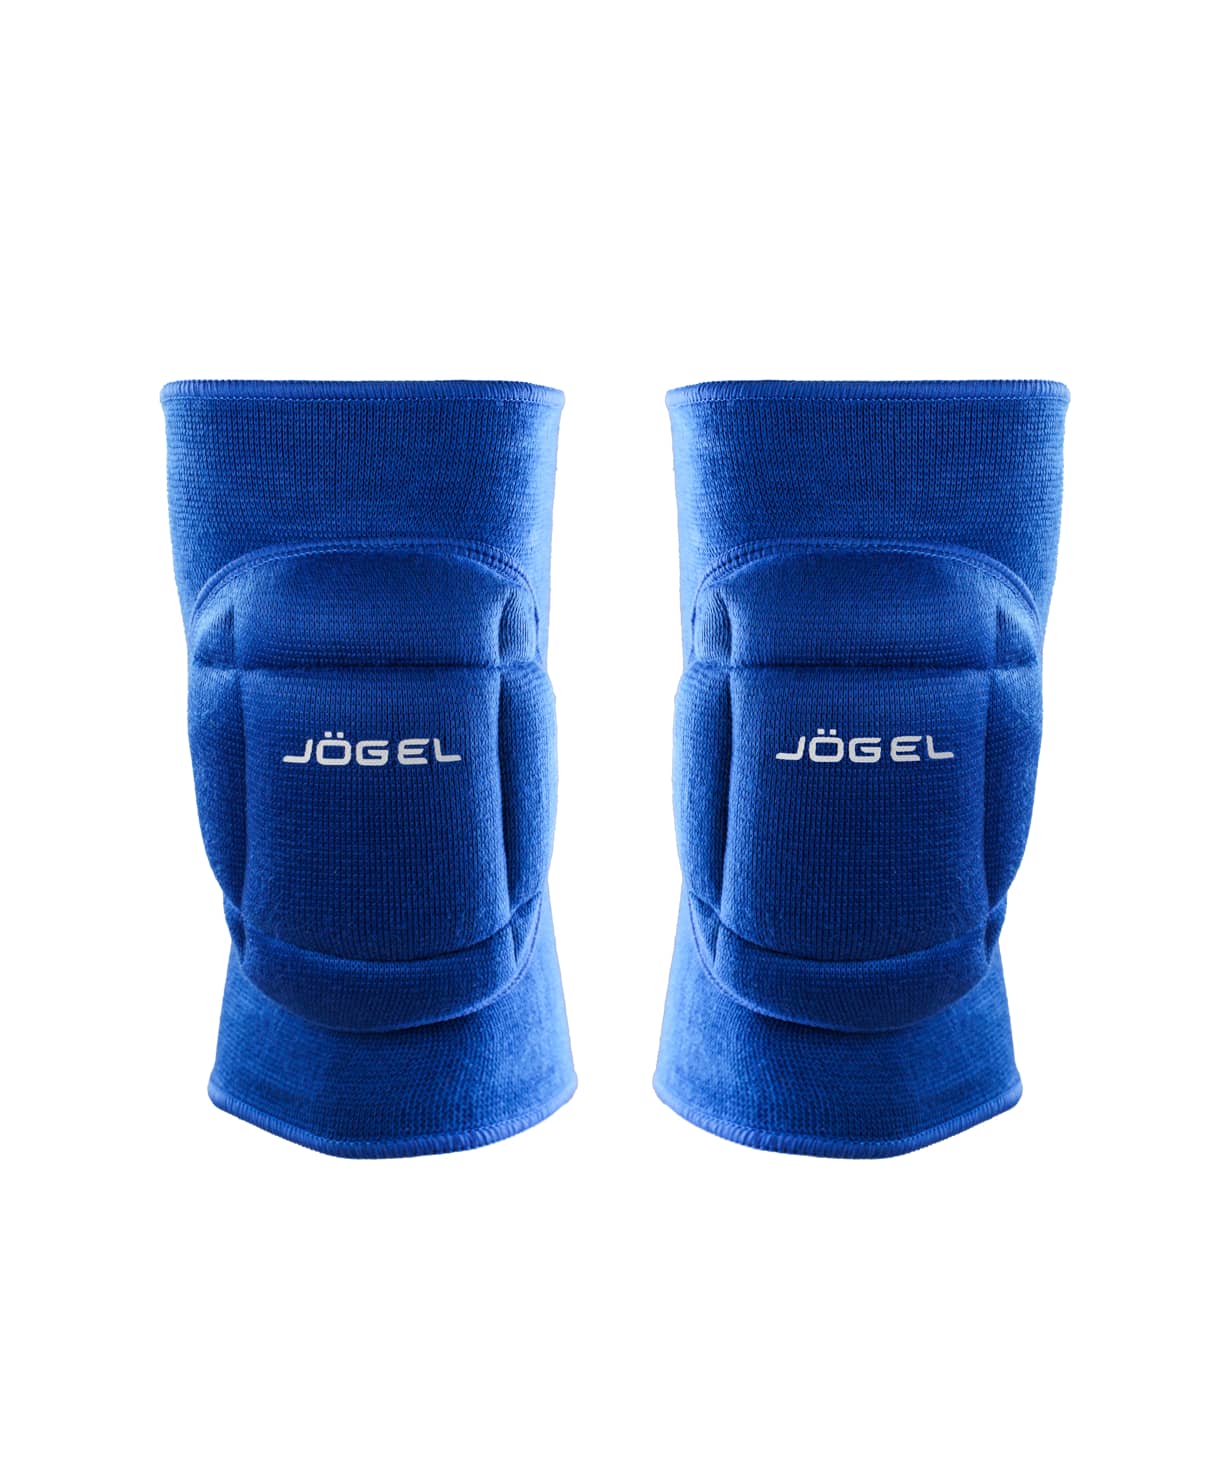 Наколенники волейбольные Jogel Soft Knee, синий